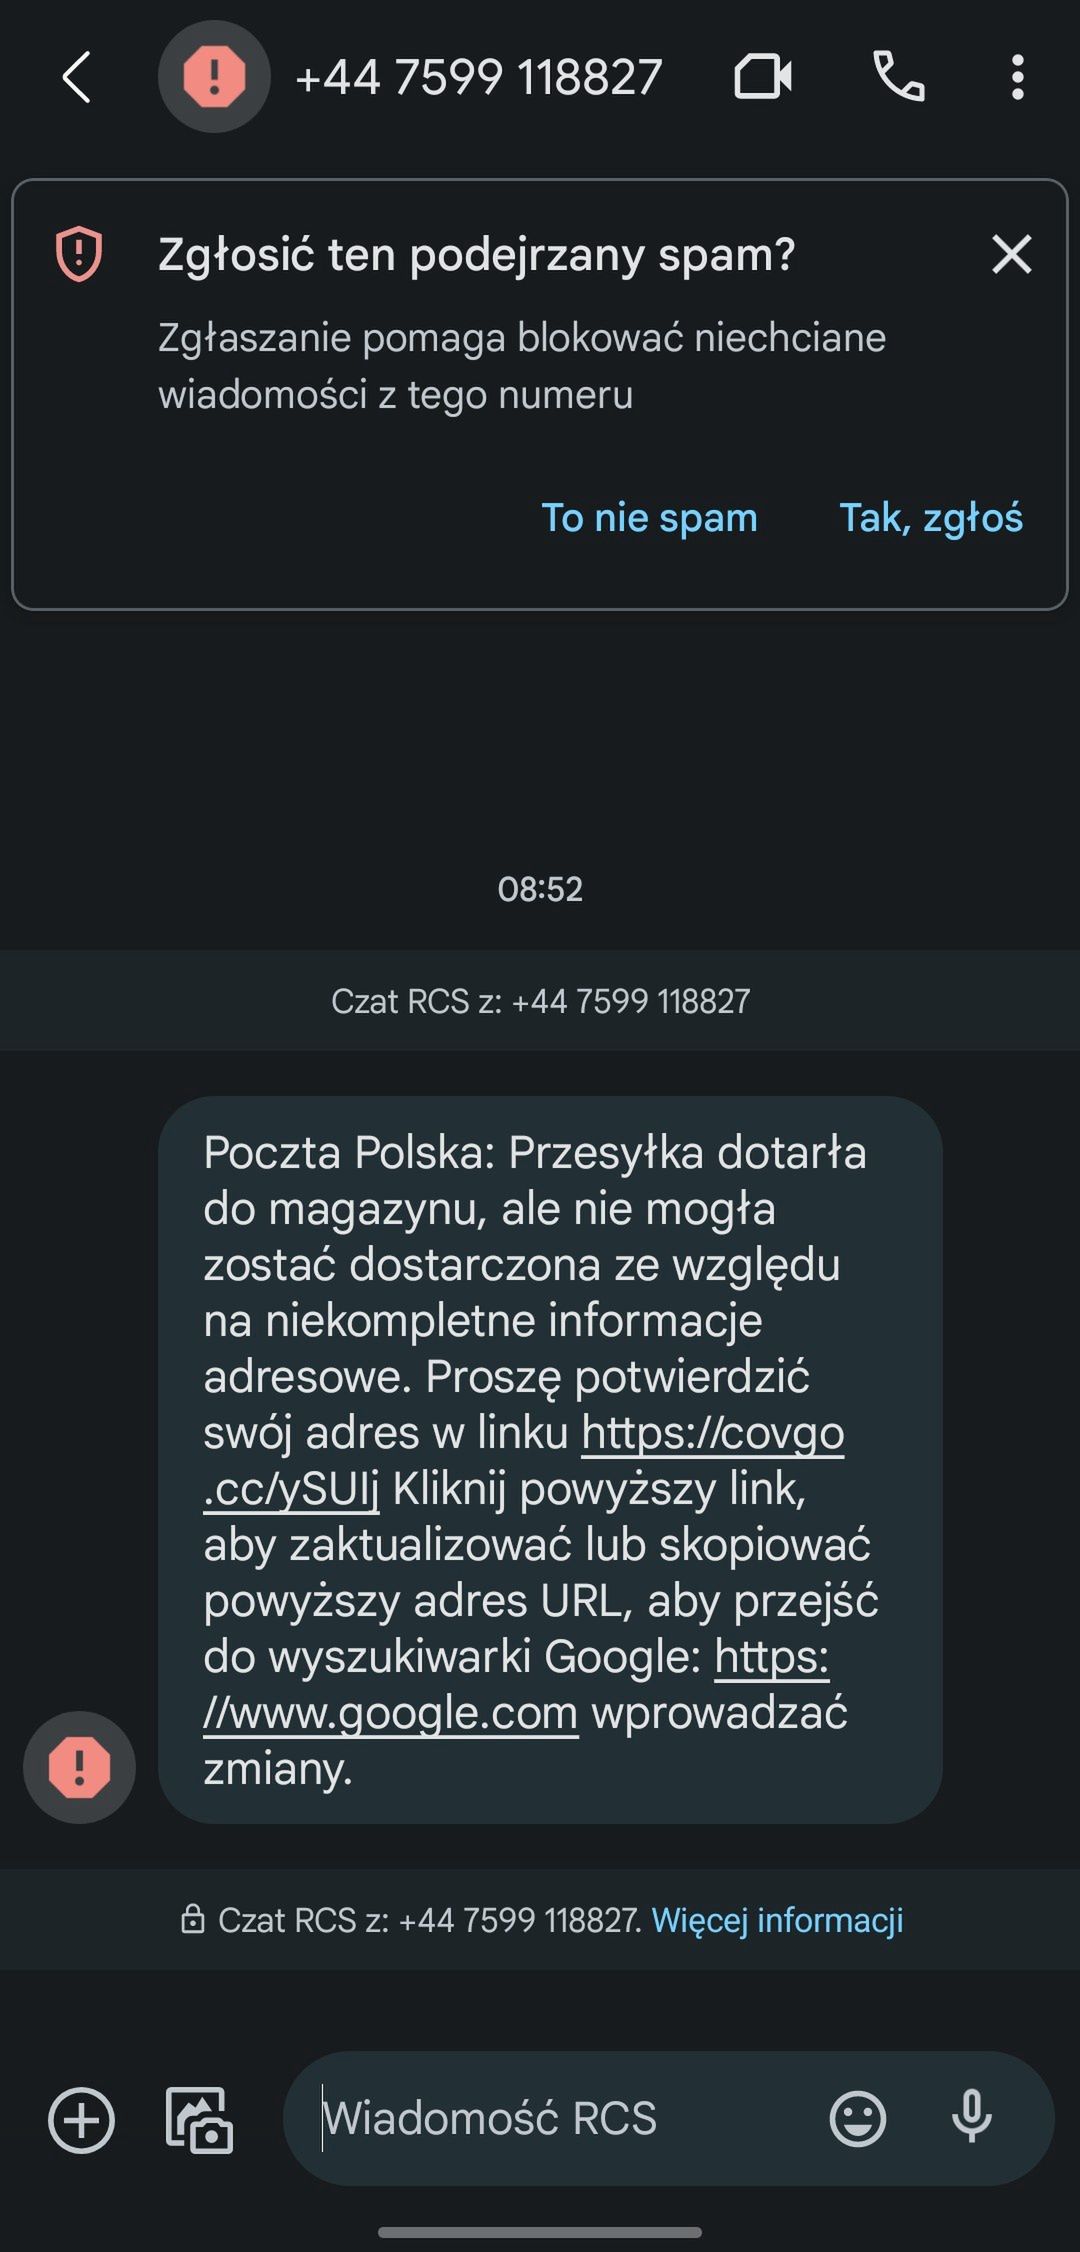 Fałszywy SMS "od Poczty Polskiej"